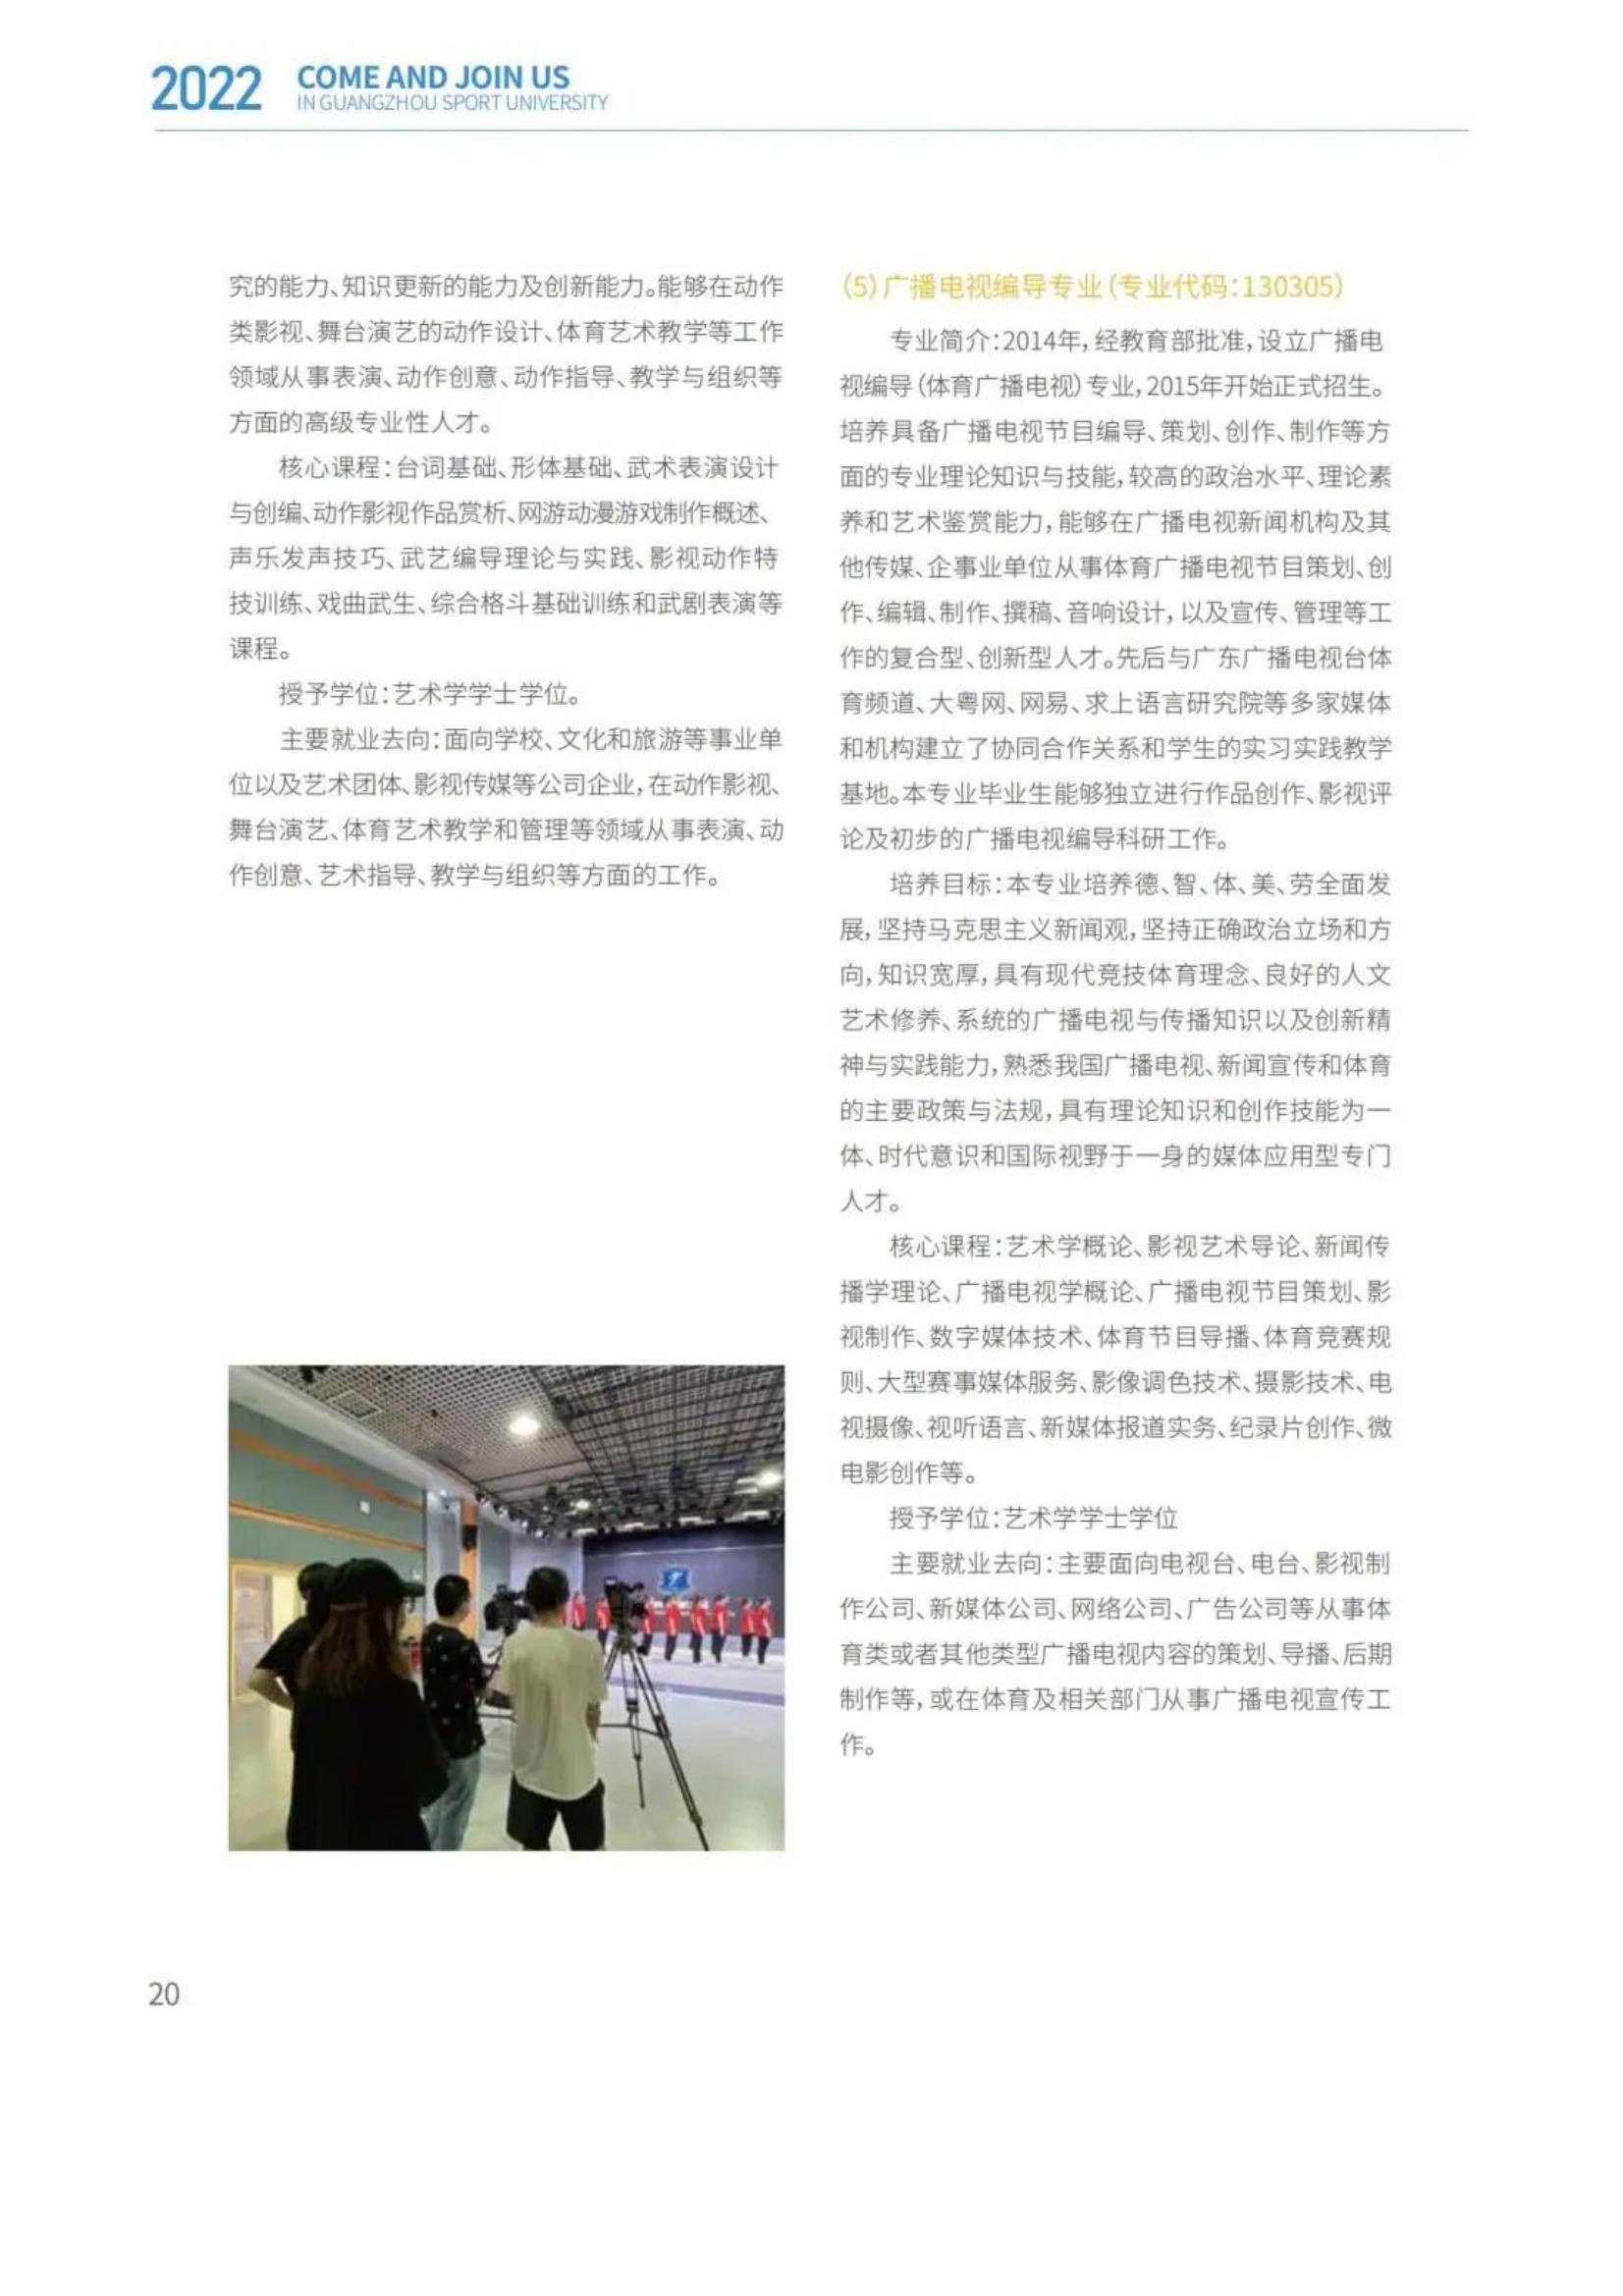 广州体育学院2022年报考指南发布_22.jpg